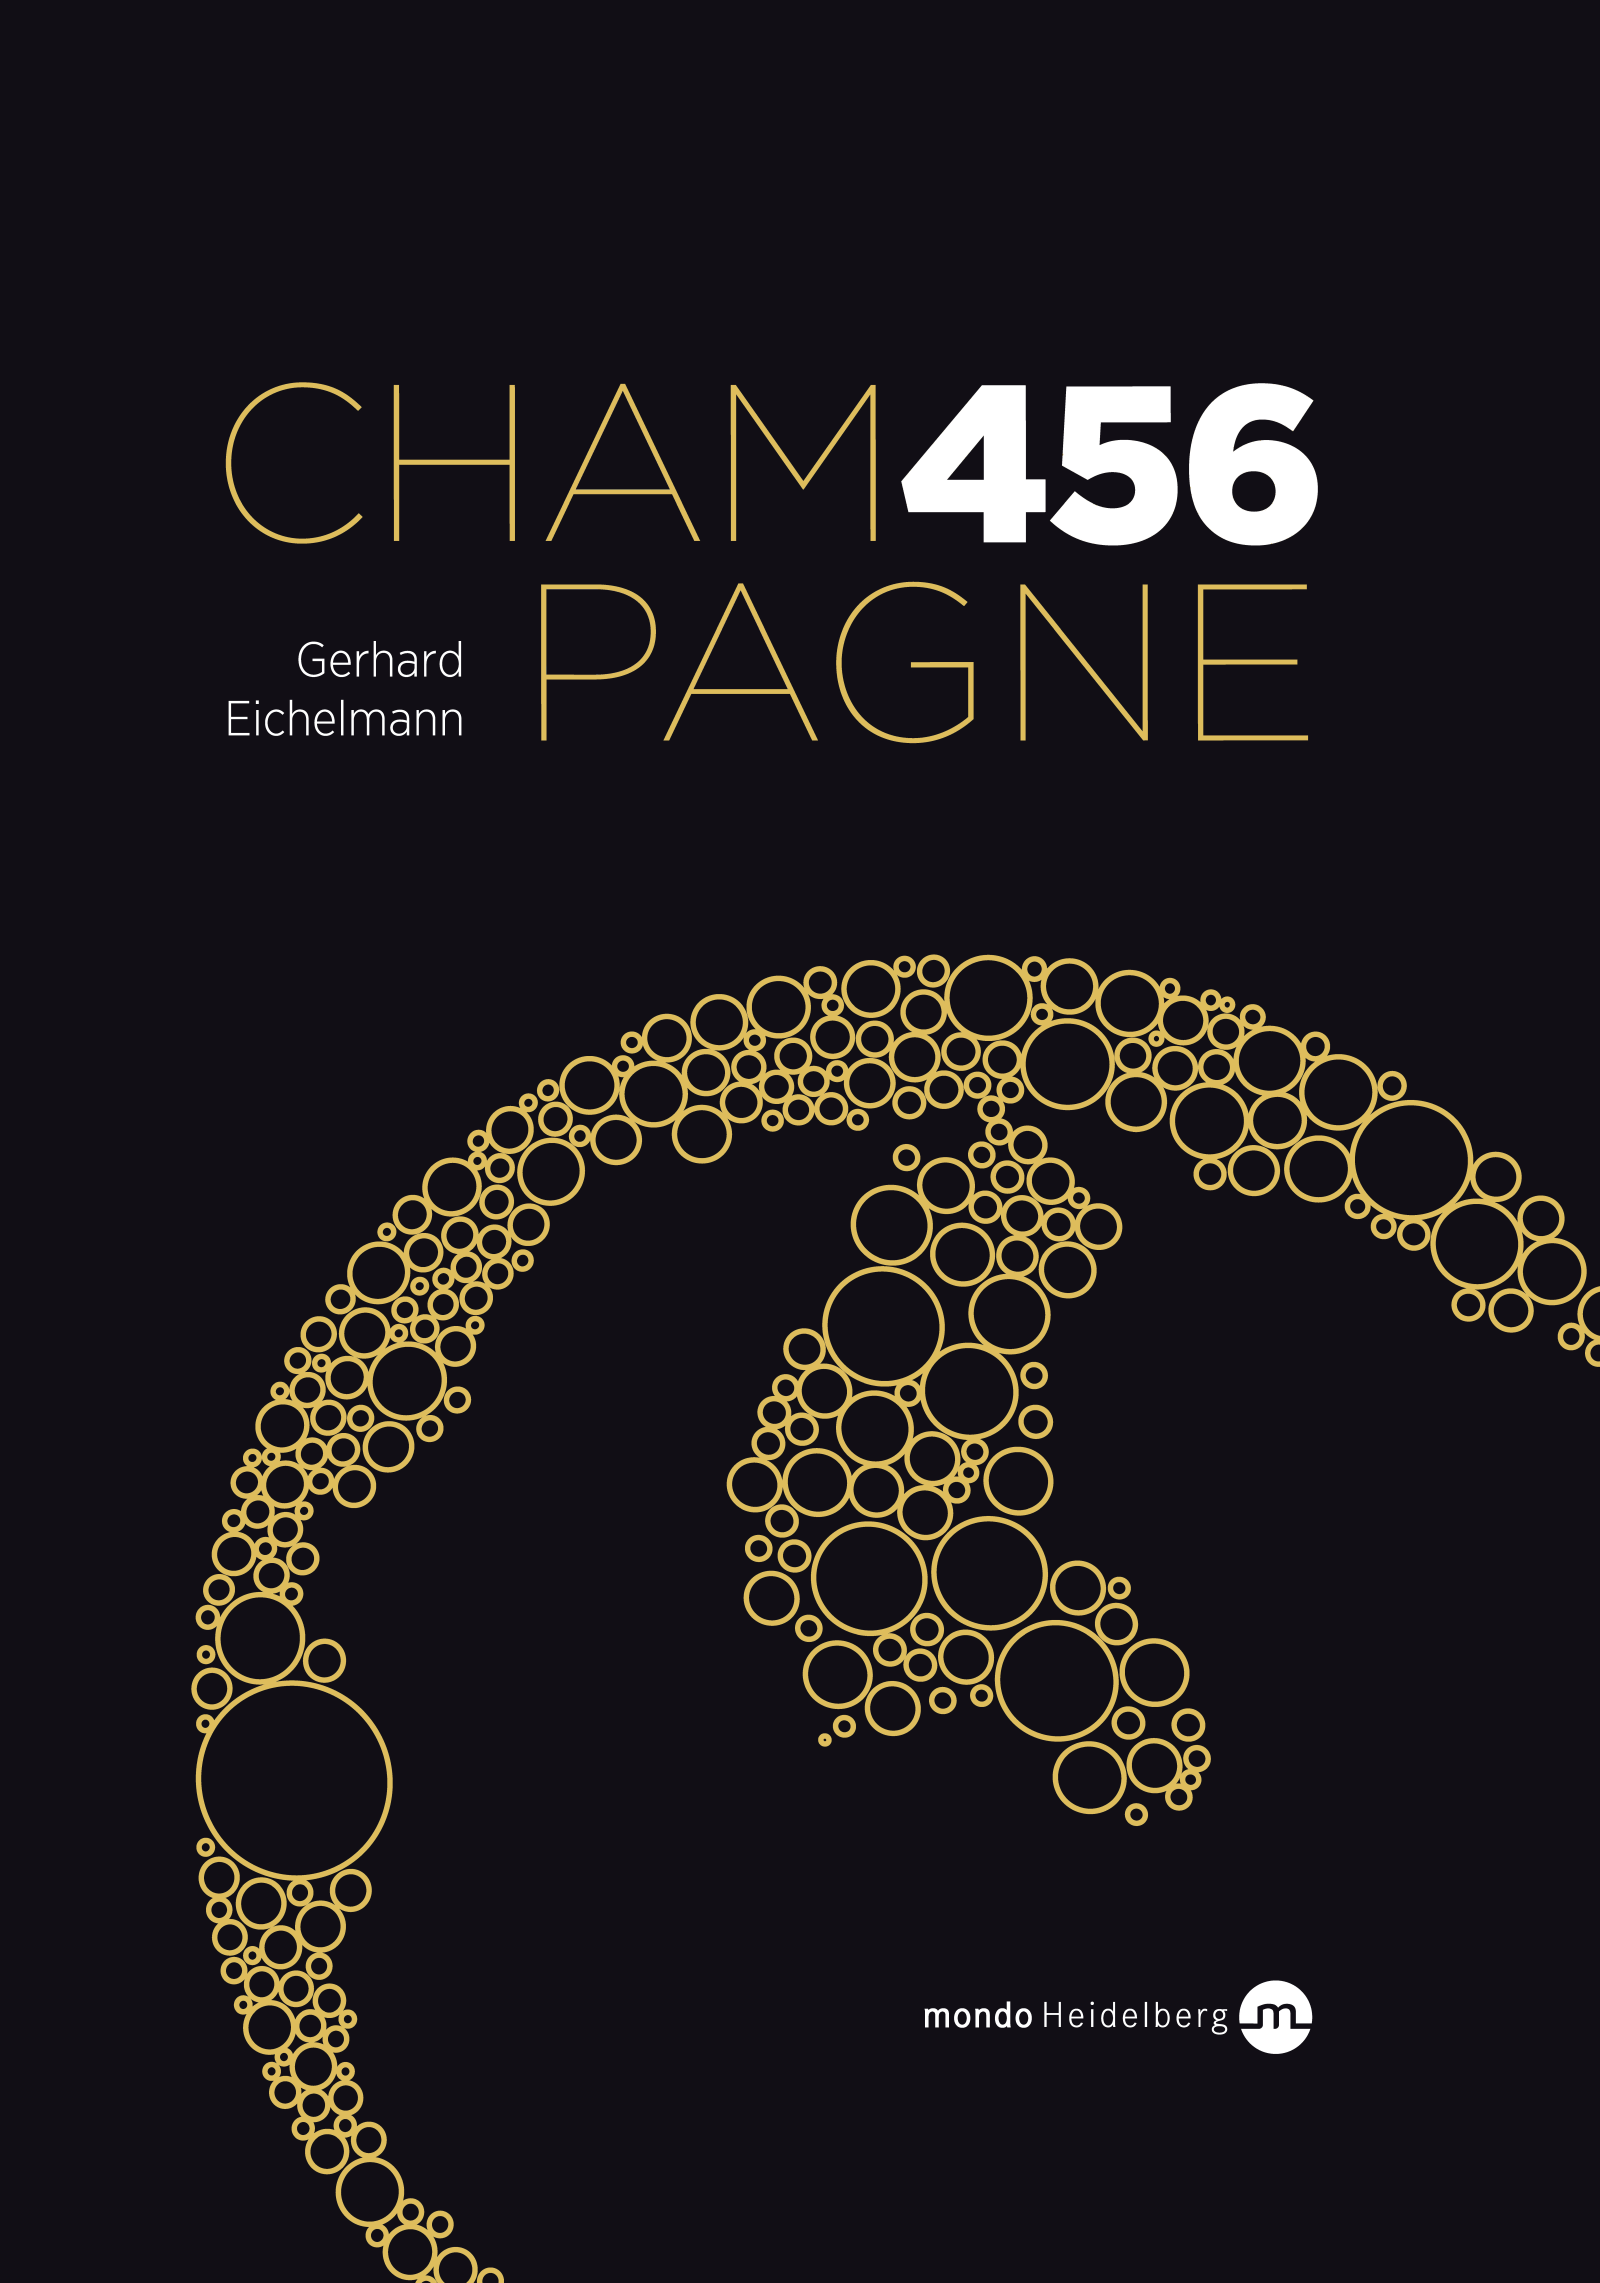 Champagne 456 by Gerhard Eichelmann